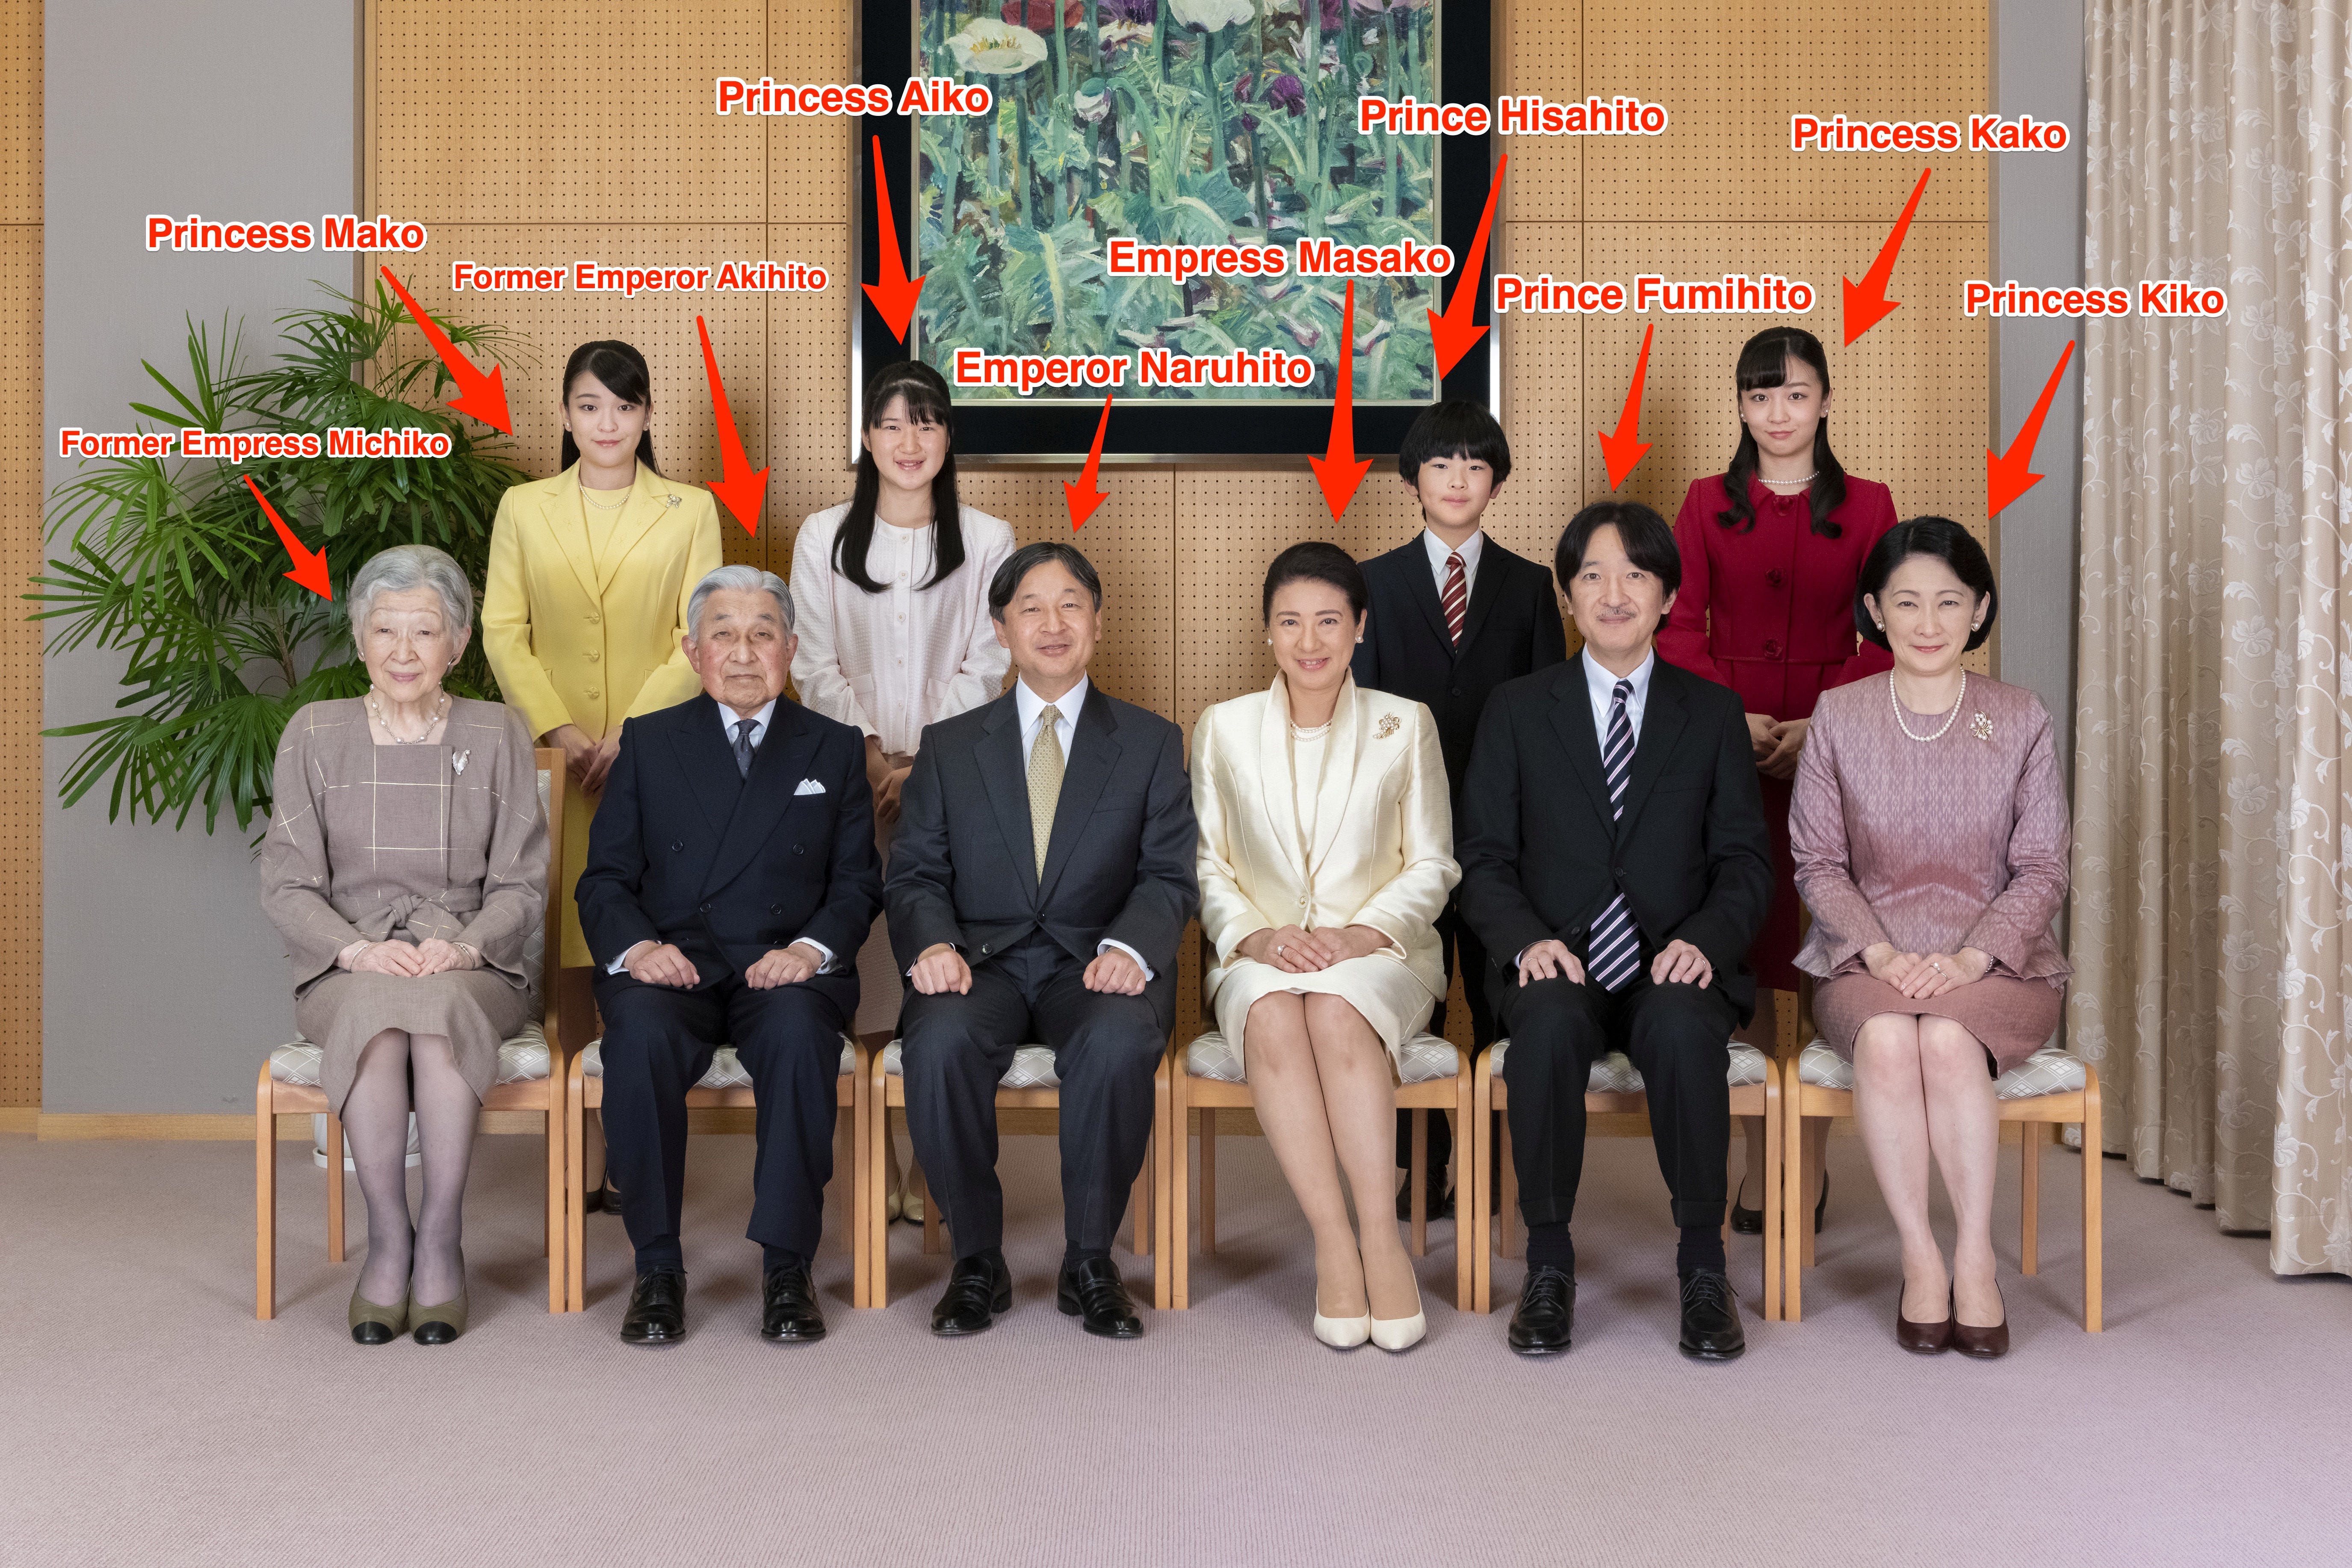 Mitglieder des kaiserlichen Haushalts von Japan.